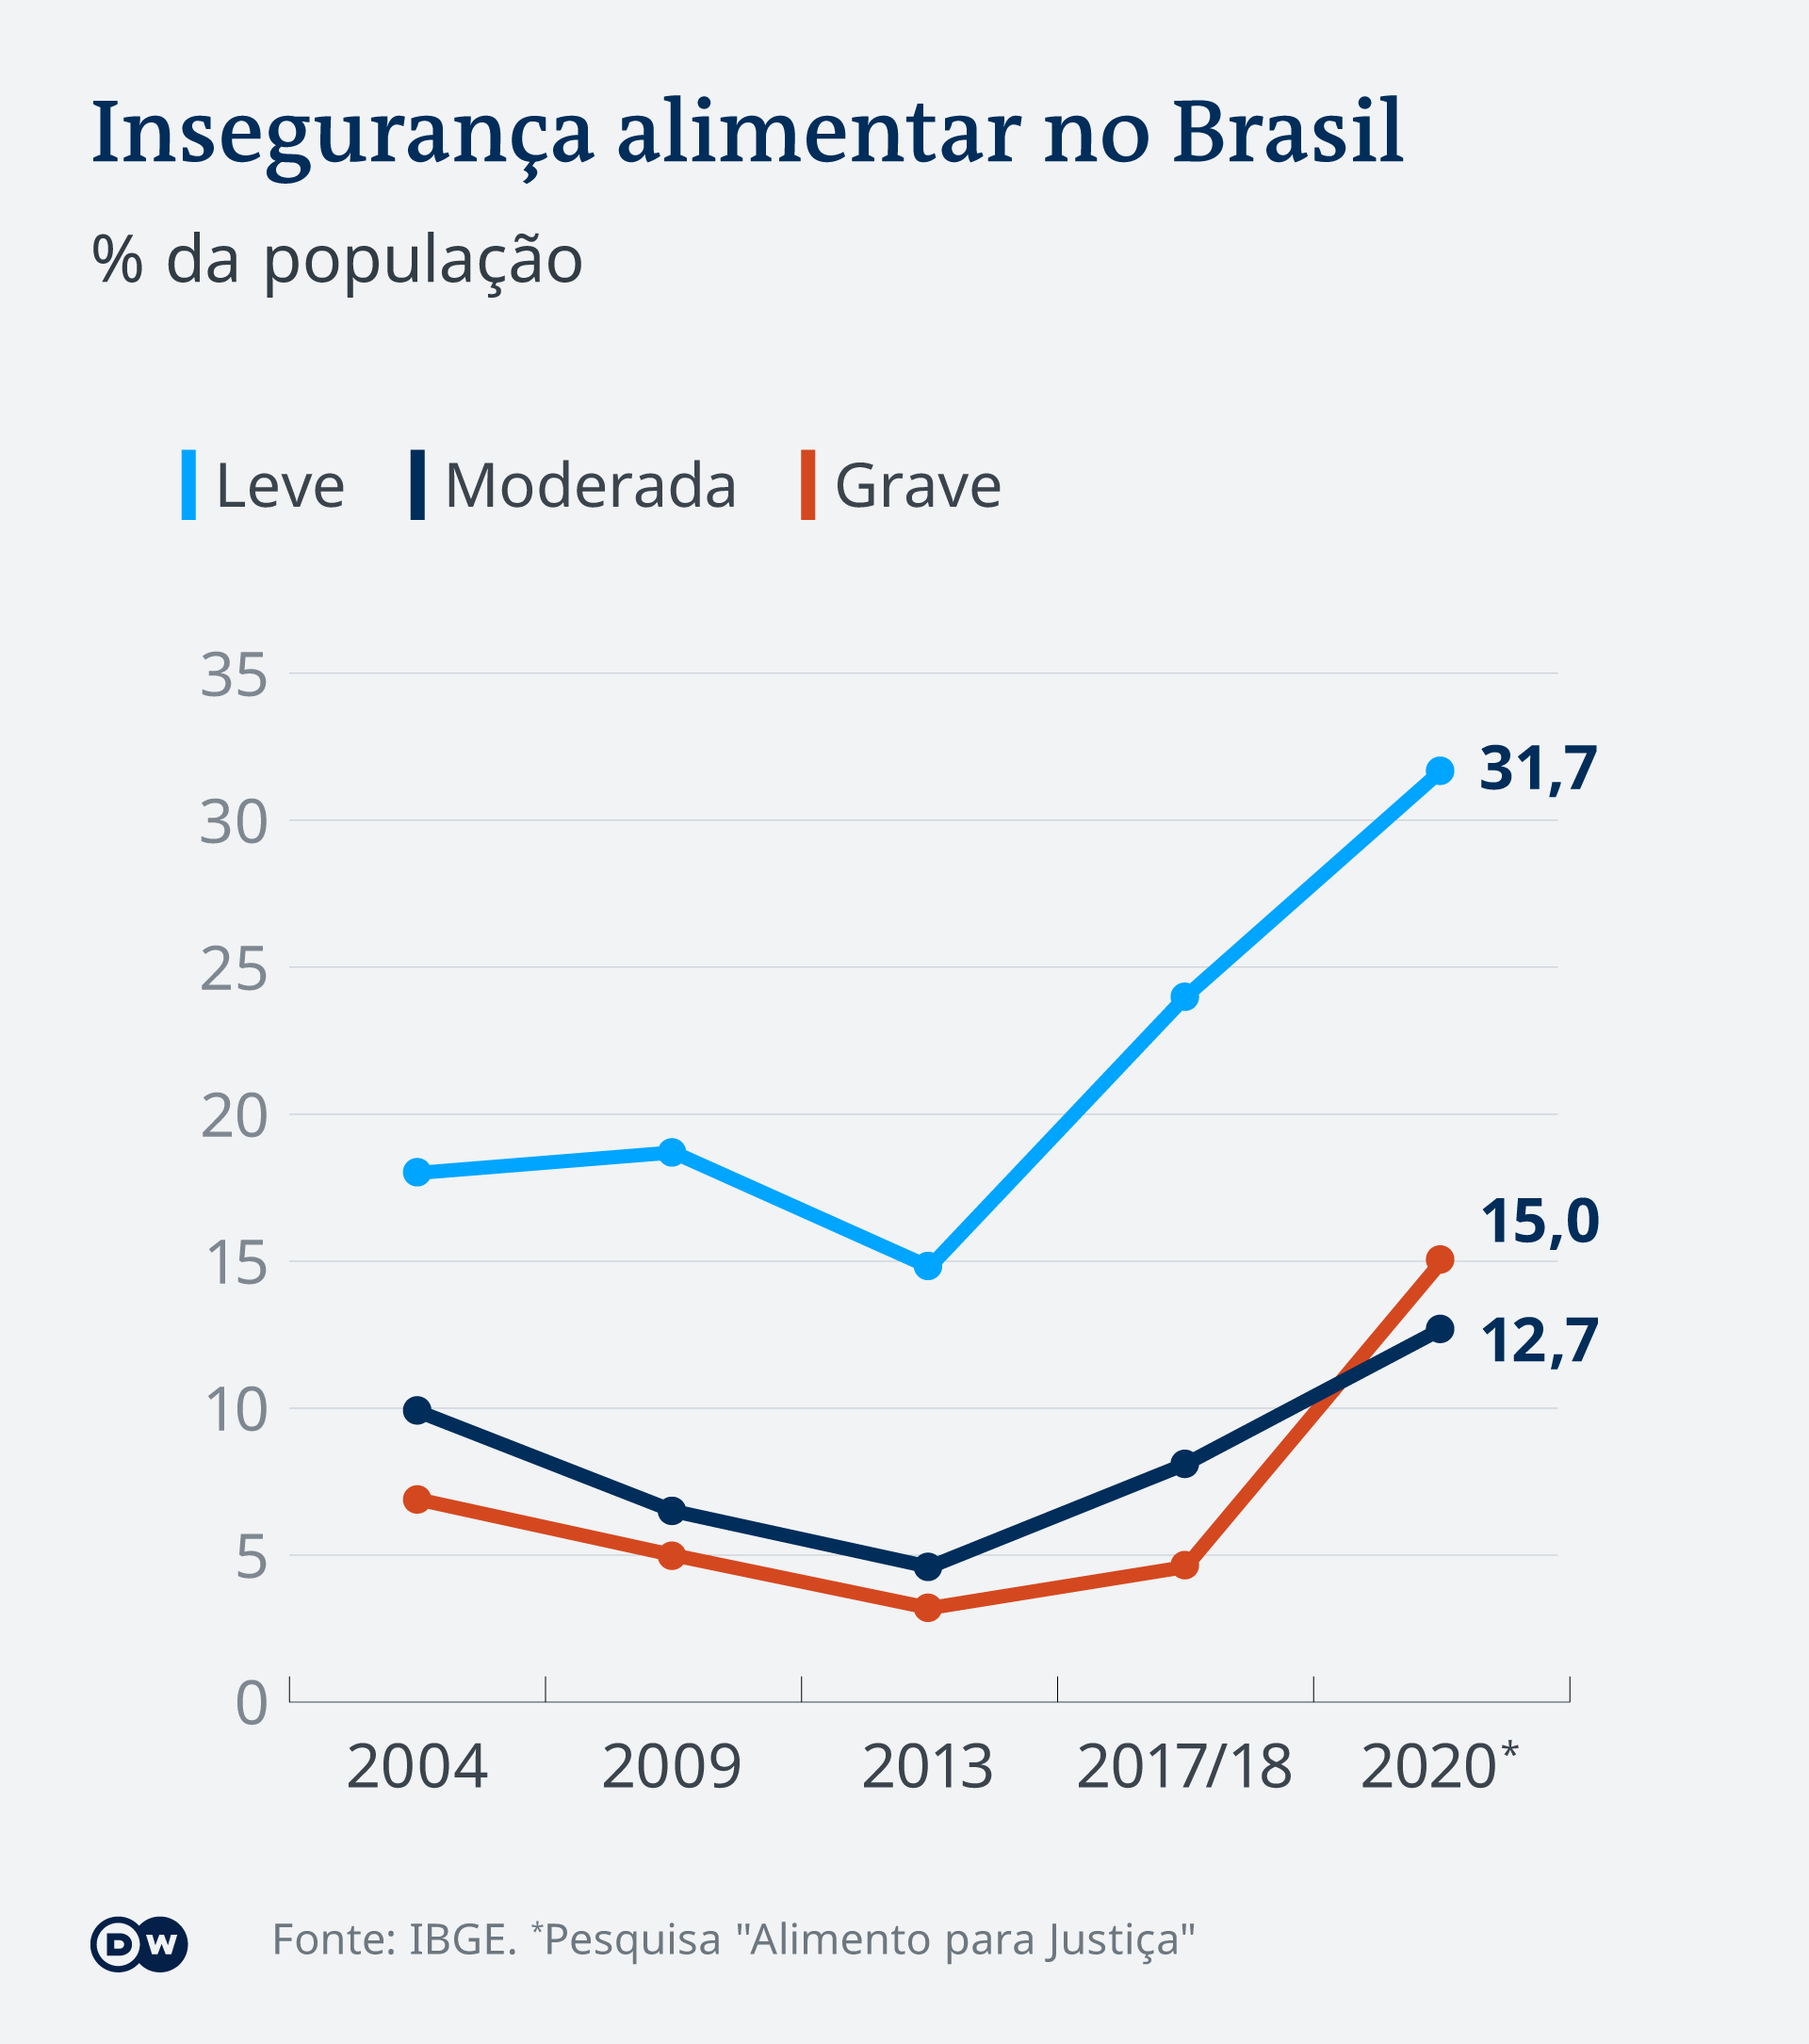 Insegurança alimentar no Brasil está mais alta do que antes do Bolsa Família. Fonte: IBGE Pesquisa "Alimento para Justiça" https://bit.ly/2PZ1bUw